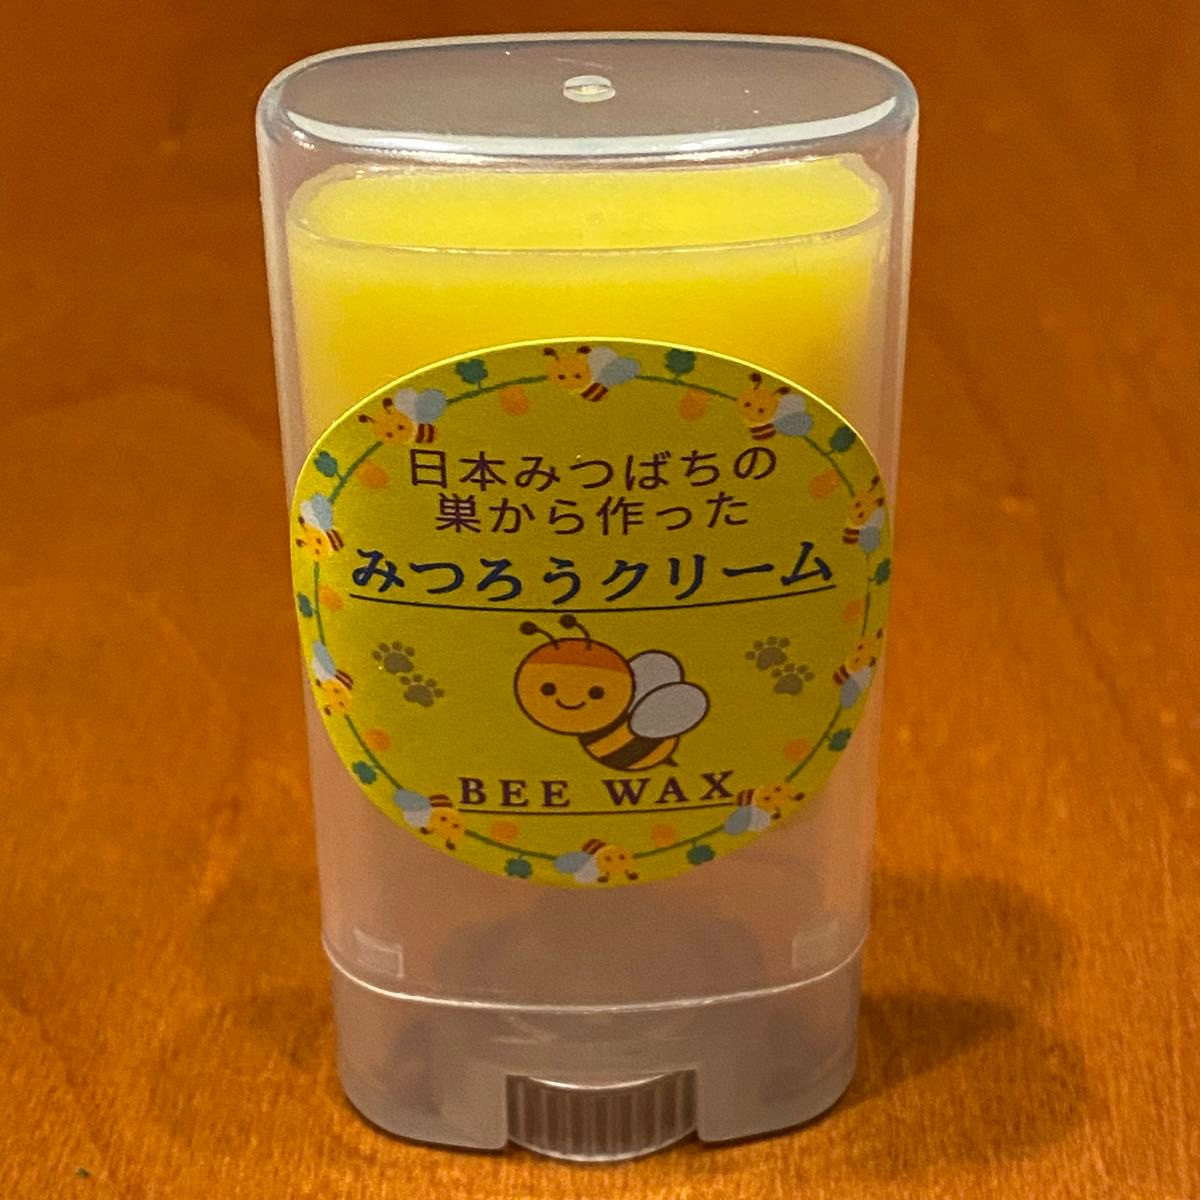 日本ミツバチ 蜜蝋 肉球クリーム 手に付かないスティックタイプ 大容量 抗生物質なし 添加物なし